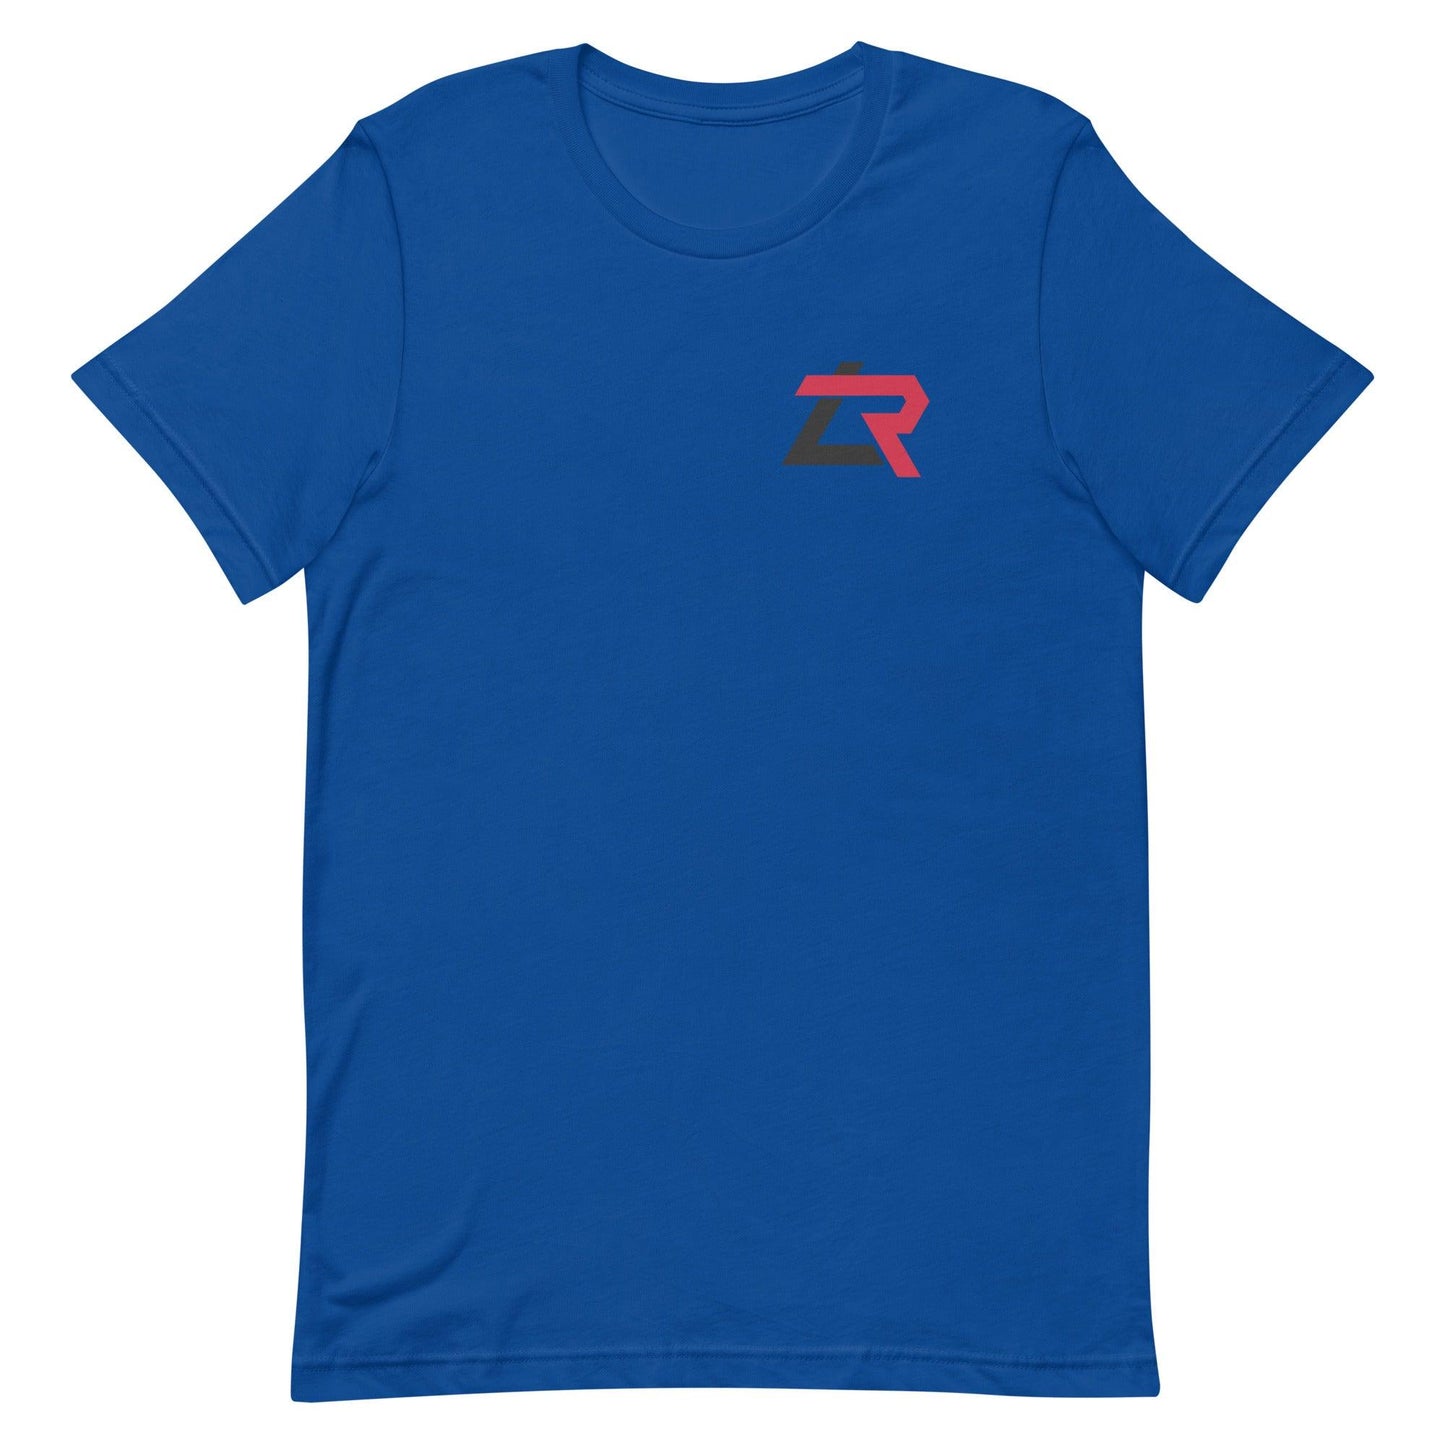 Lyon Richardson "LR" t-shirt - Fan Arch